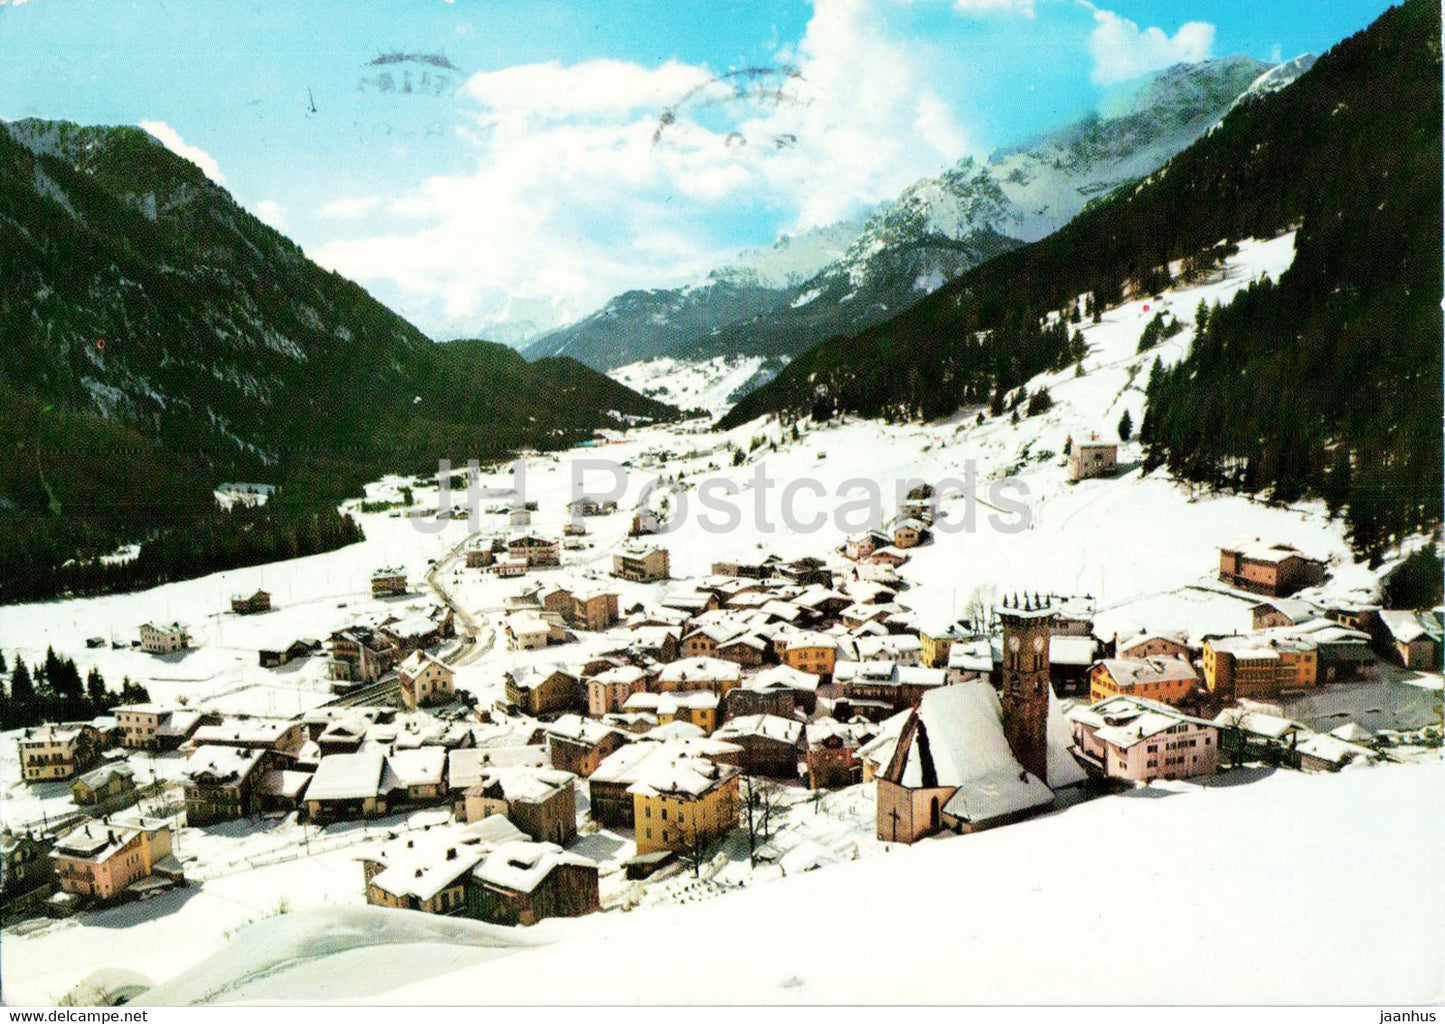 Dolomiti di Fassa Trentino - Campitello 1448 m - 1970 - Italy - used - JH Postcards